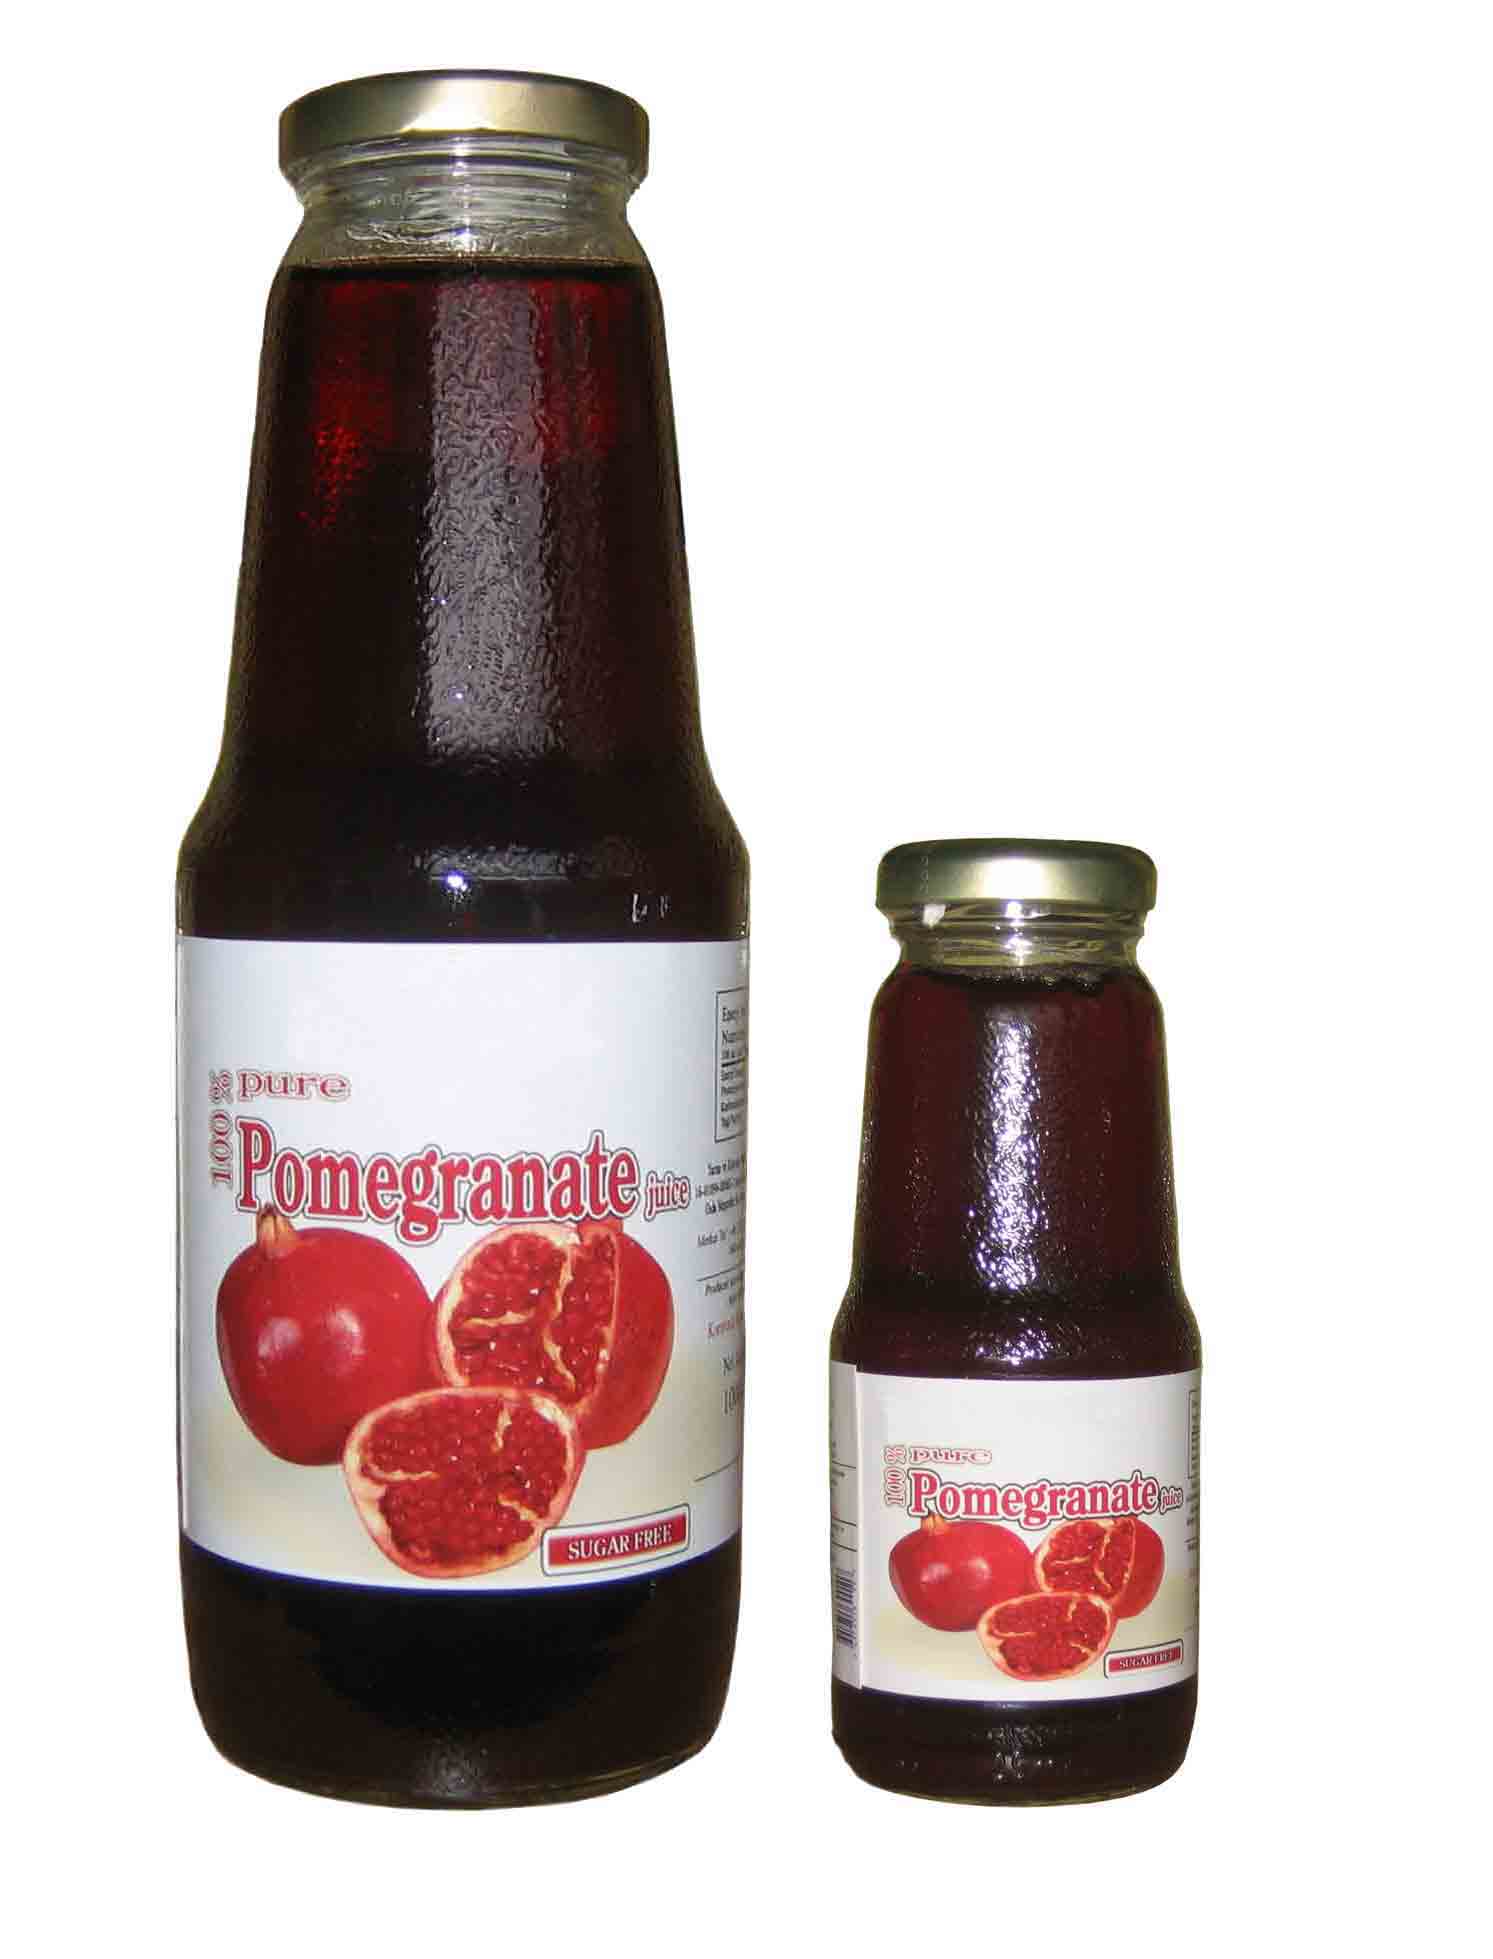 Quality Pomegranate Juice (La qualité du jus de grenade)